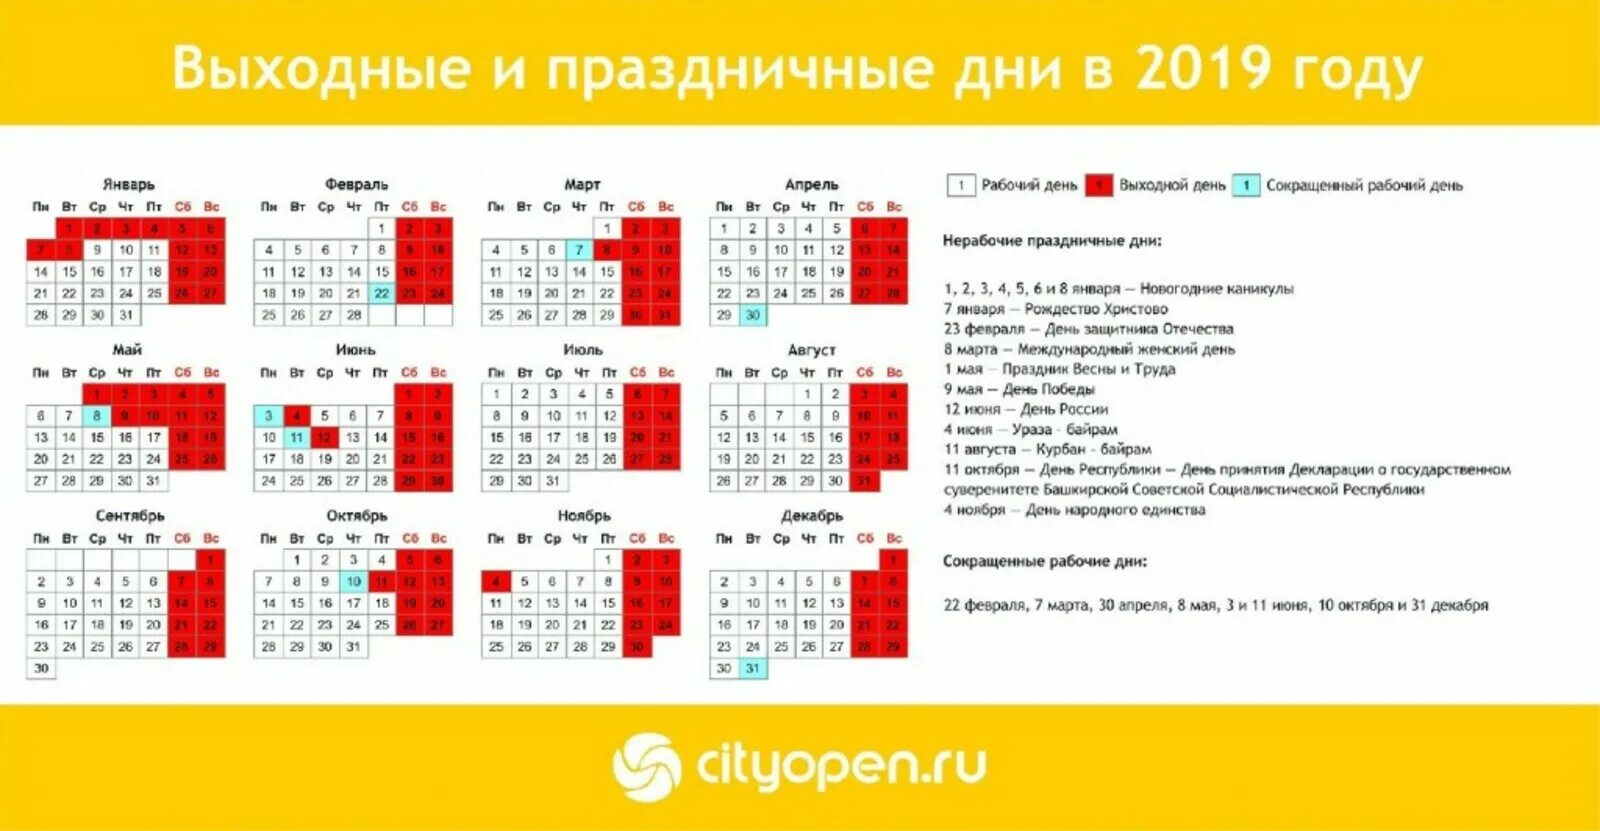 Праздничные дни. Выходные и праздничные дни. Календарь праздничных дней. Выходные и праздничные дни в 2019 году.